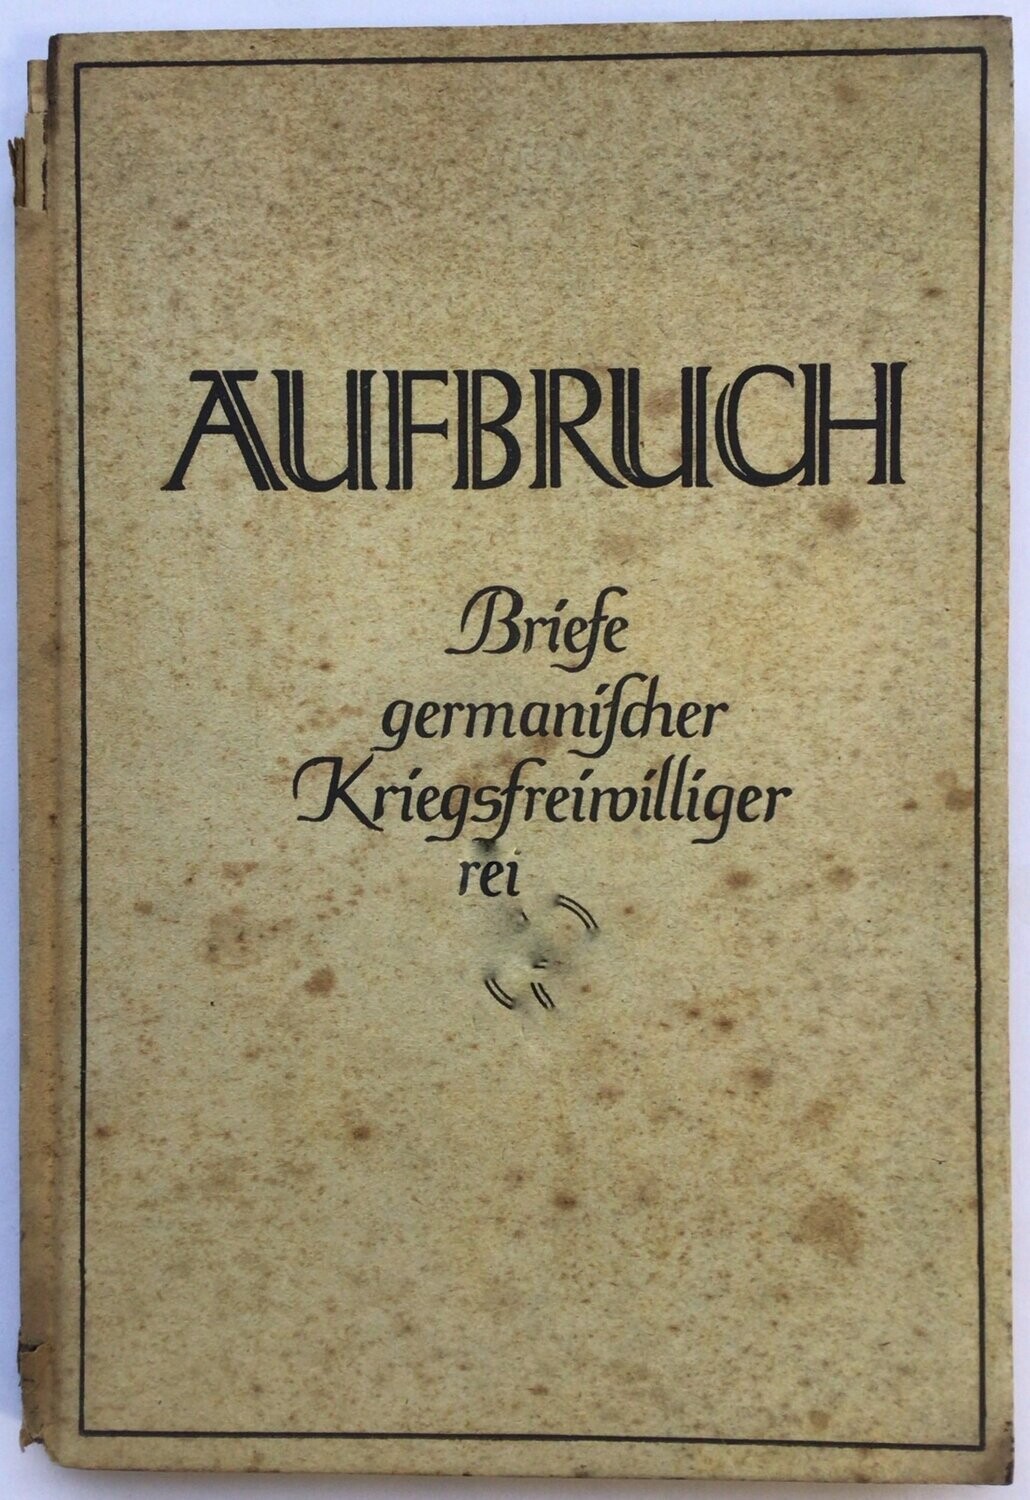 Reichsführer SS - SS-Hauptamt: Aufbruch - Briefe germanischer Kriegsfreiwilliger - Pappausgabe aus 1943